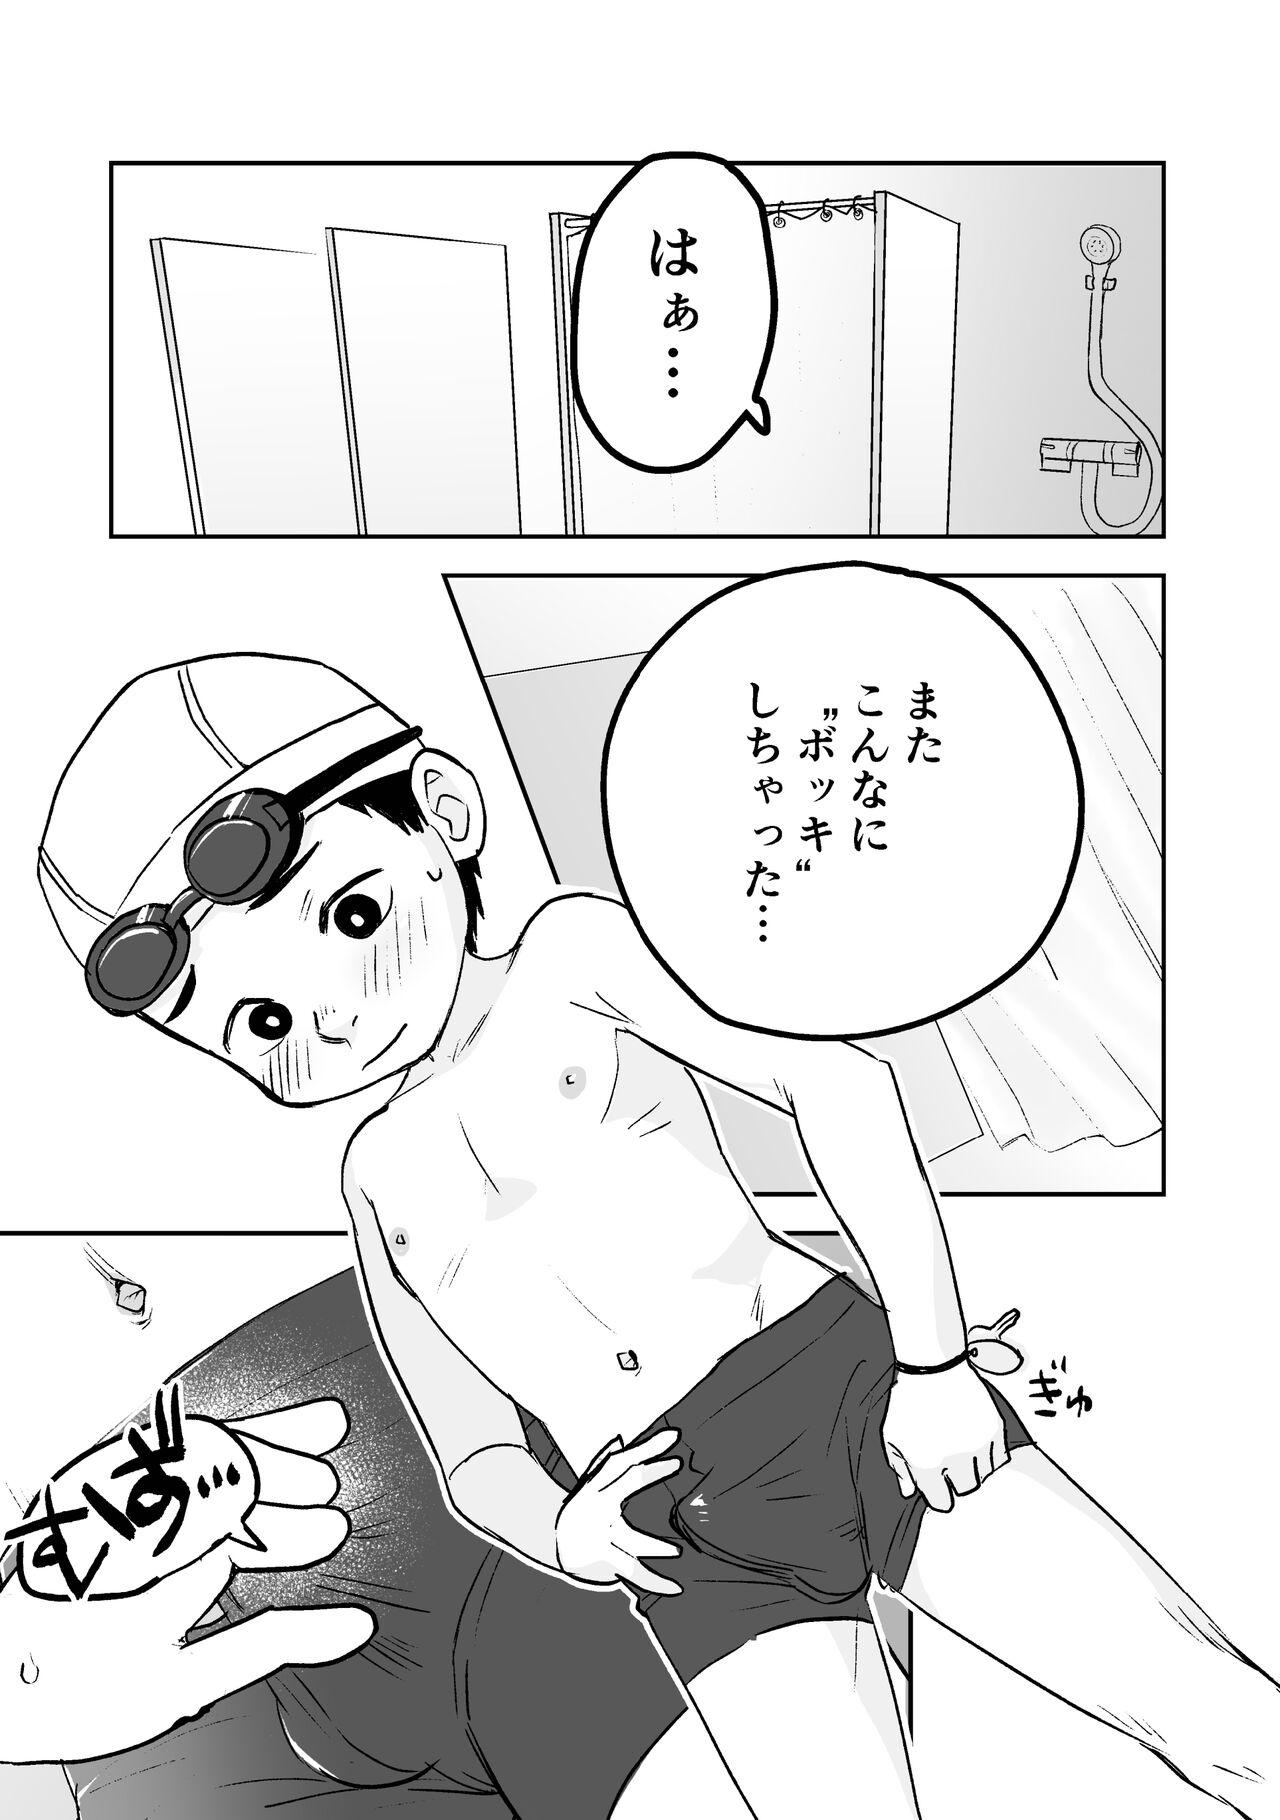 Thick Himitsu no Suiyoubi Matome - Original Boob - Page 7